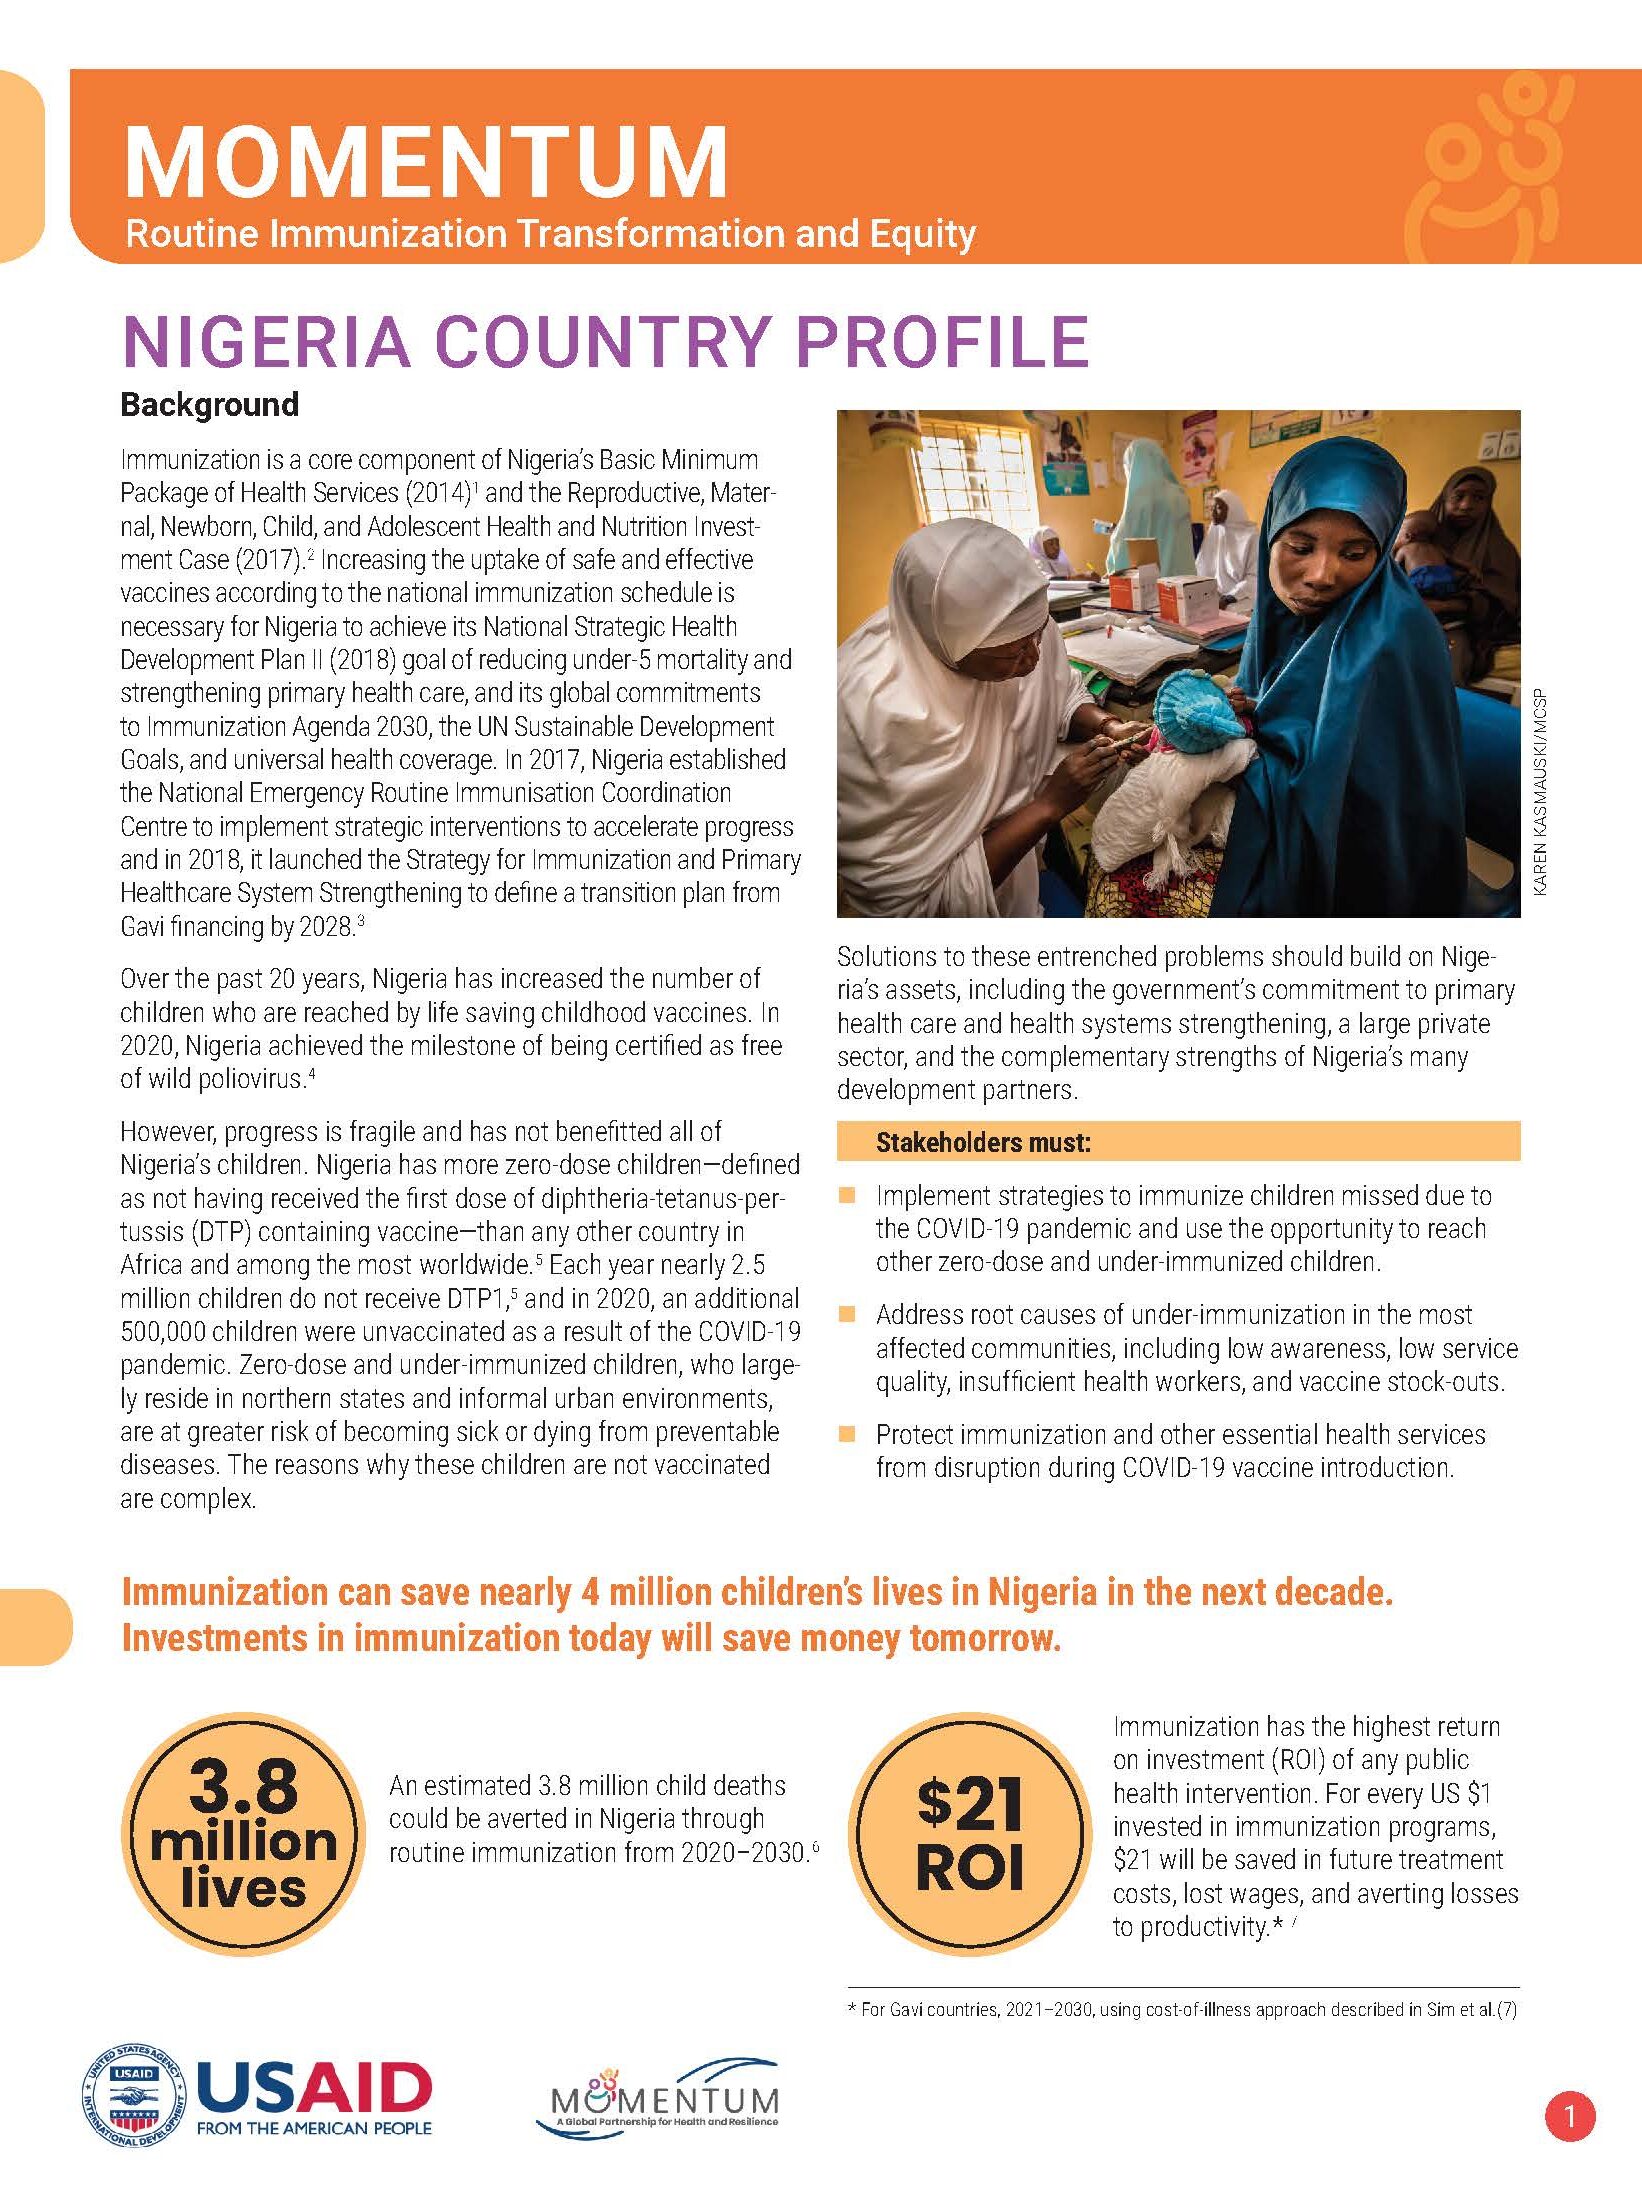 literature review on immunization in nigeria pdf